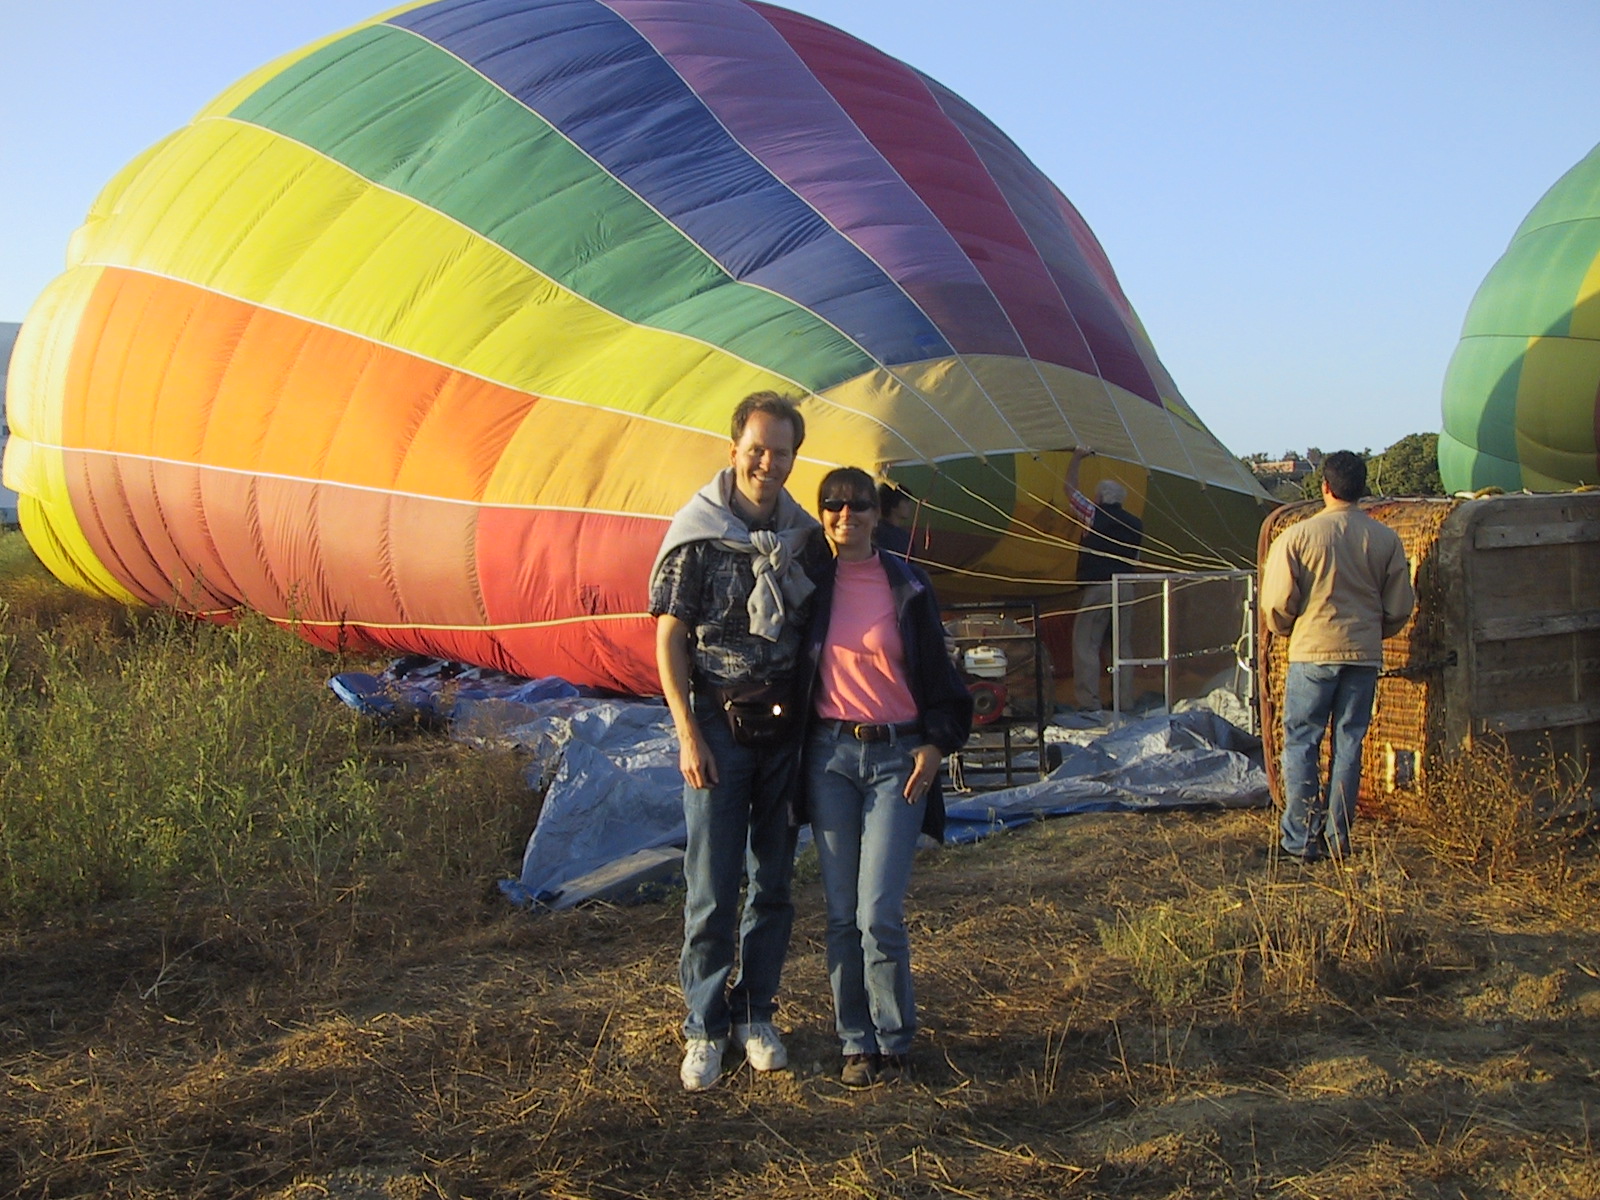 Randy and Vivian's first balloon ride!